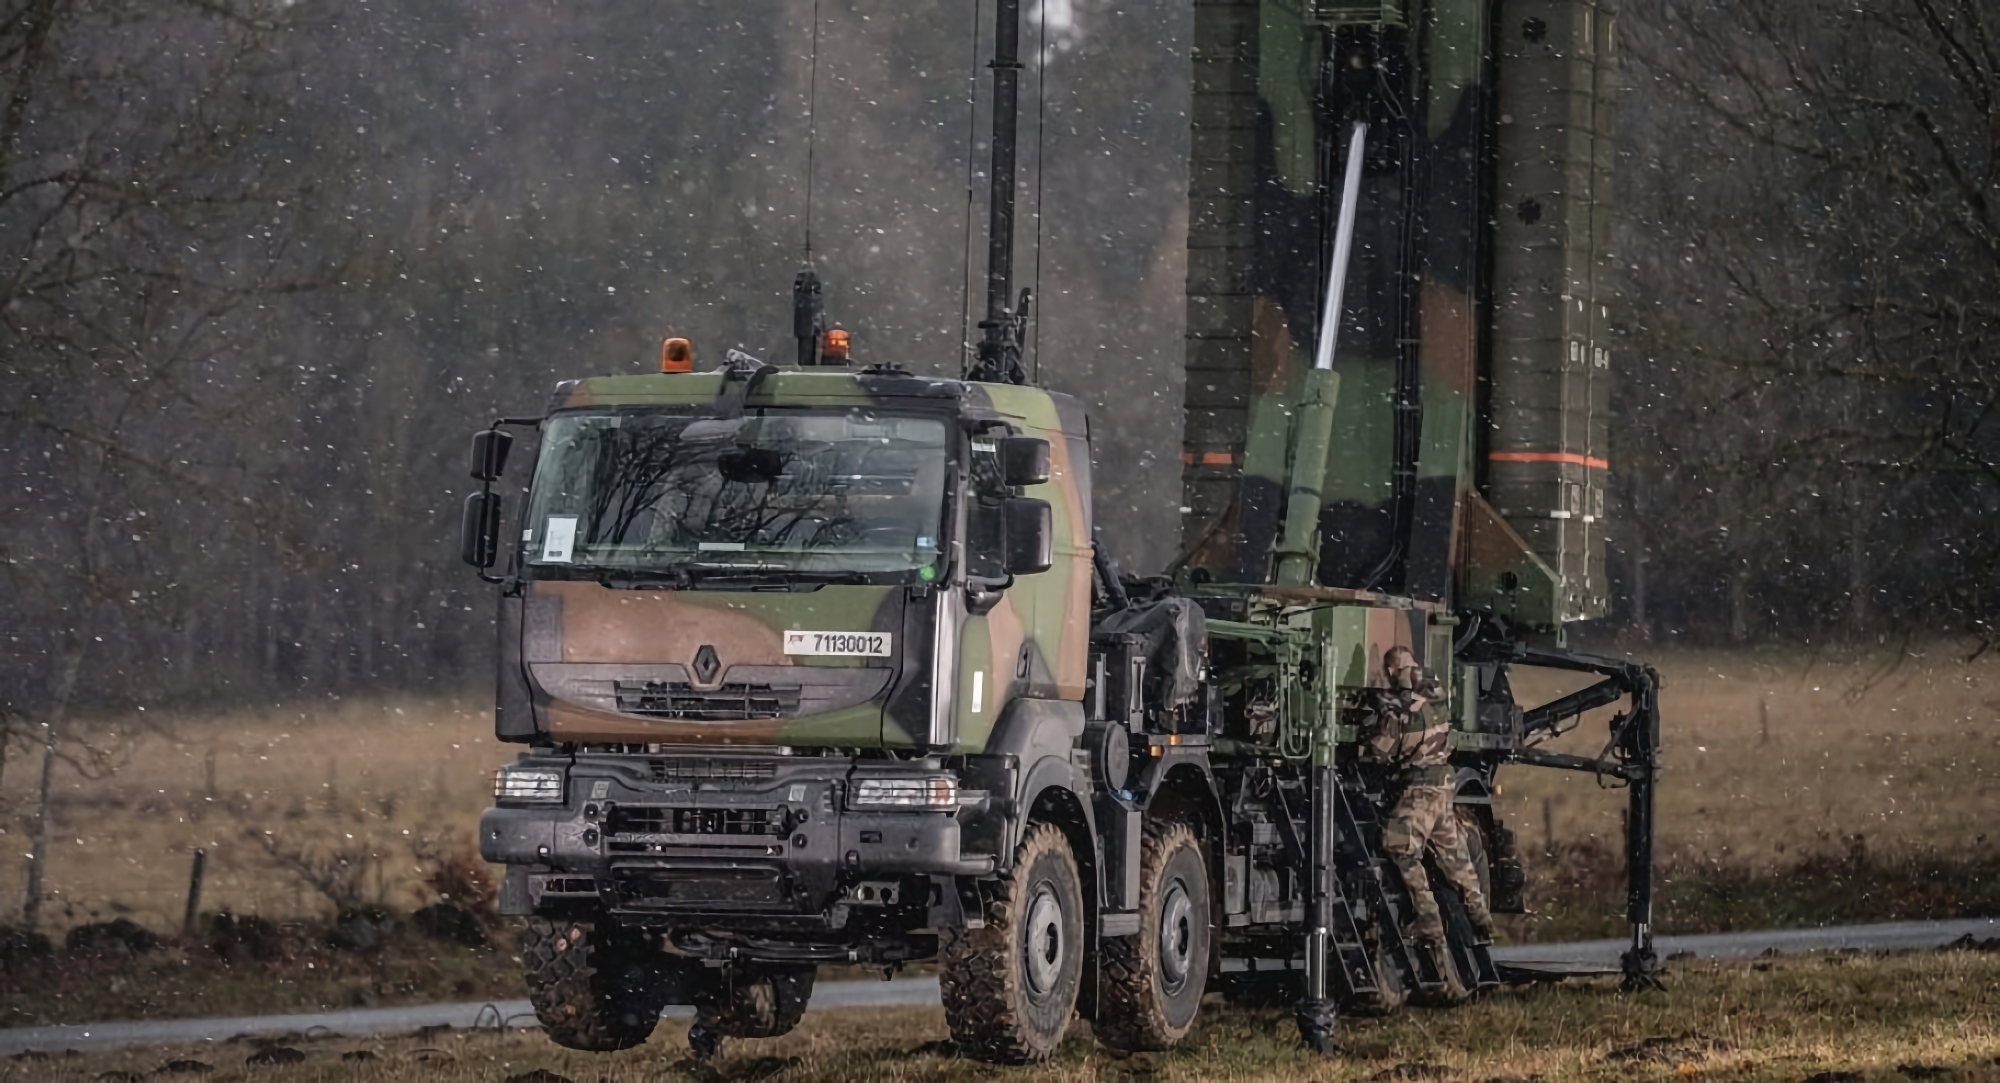 Włochy przygotowują siódmy pakiet pomocy wojskowej dla Ukrainy, który obejmie SAMP/T SAM